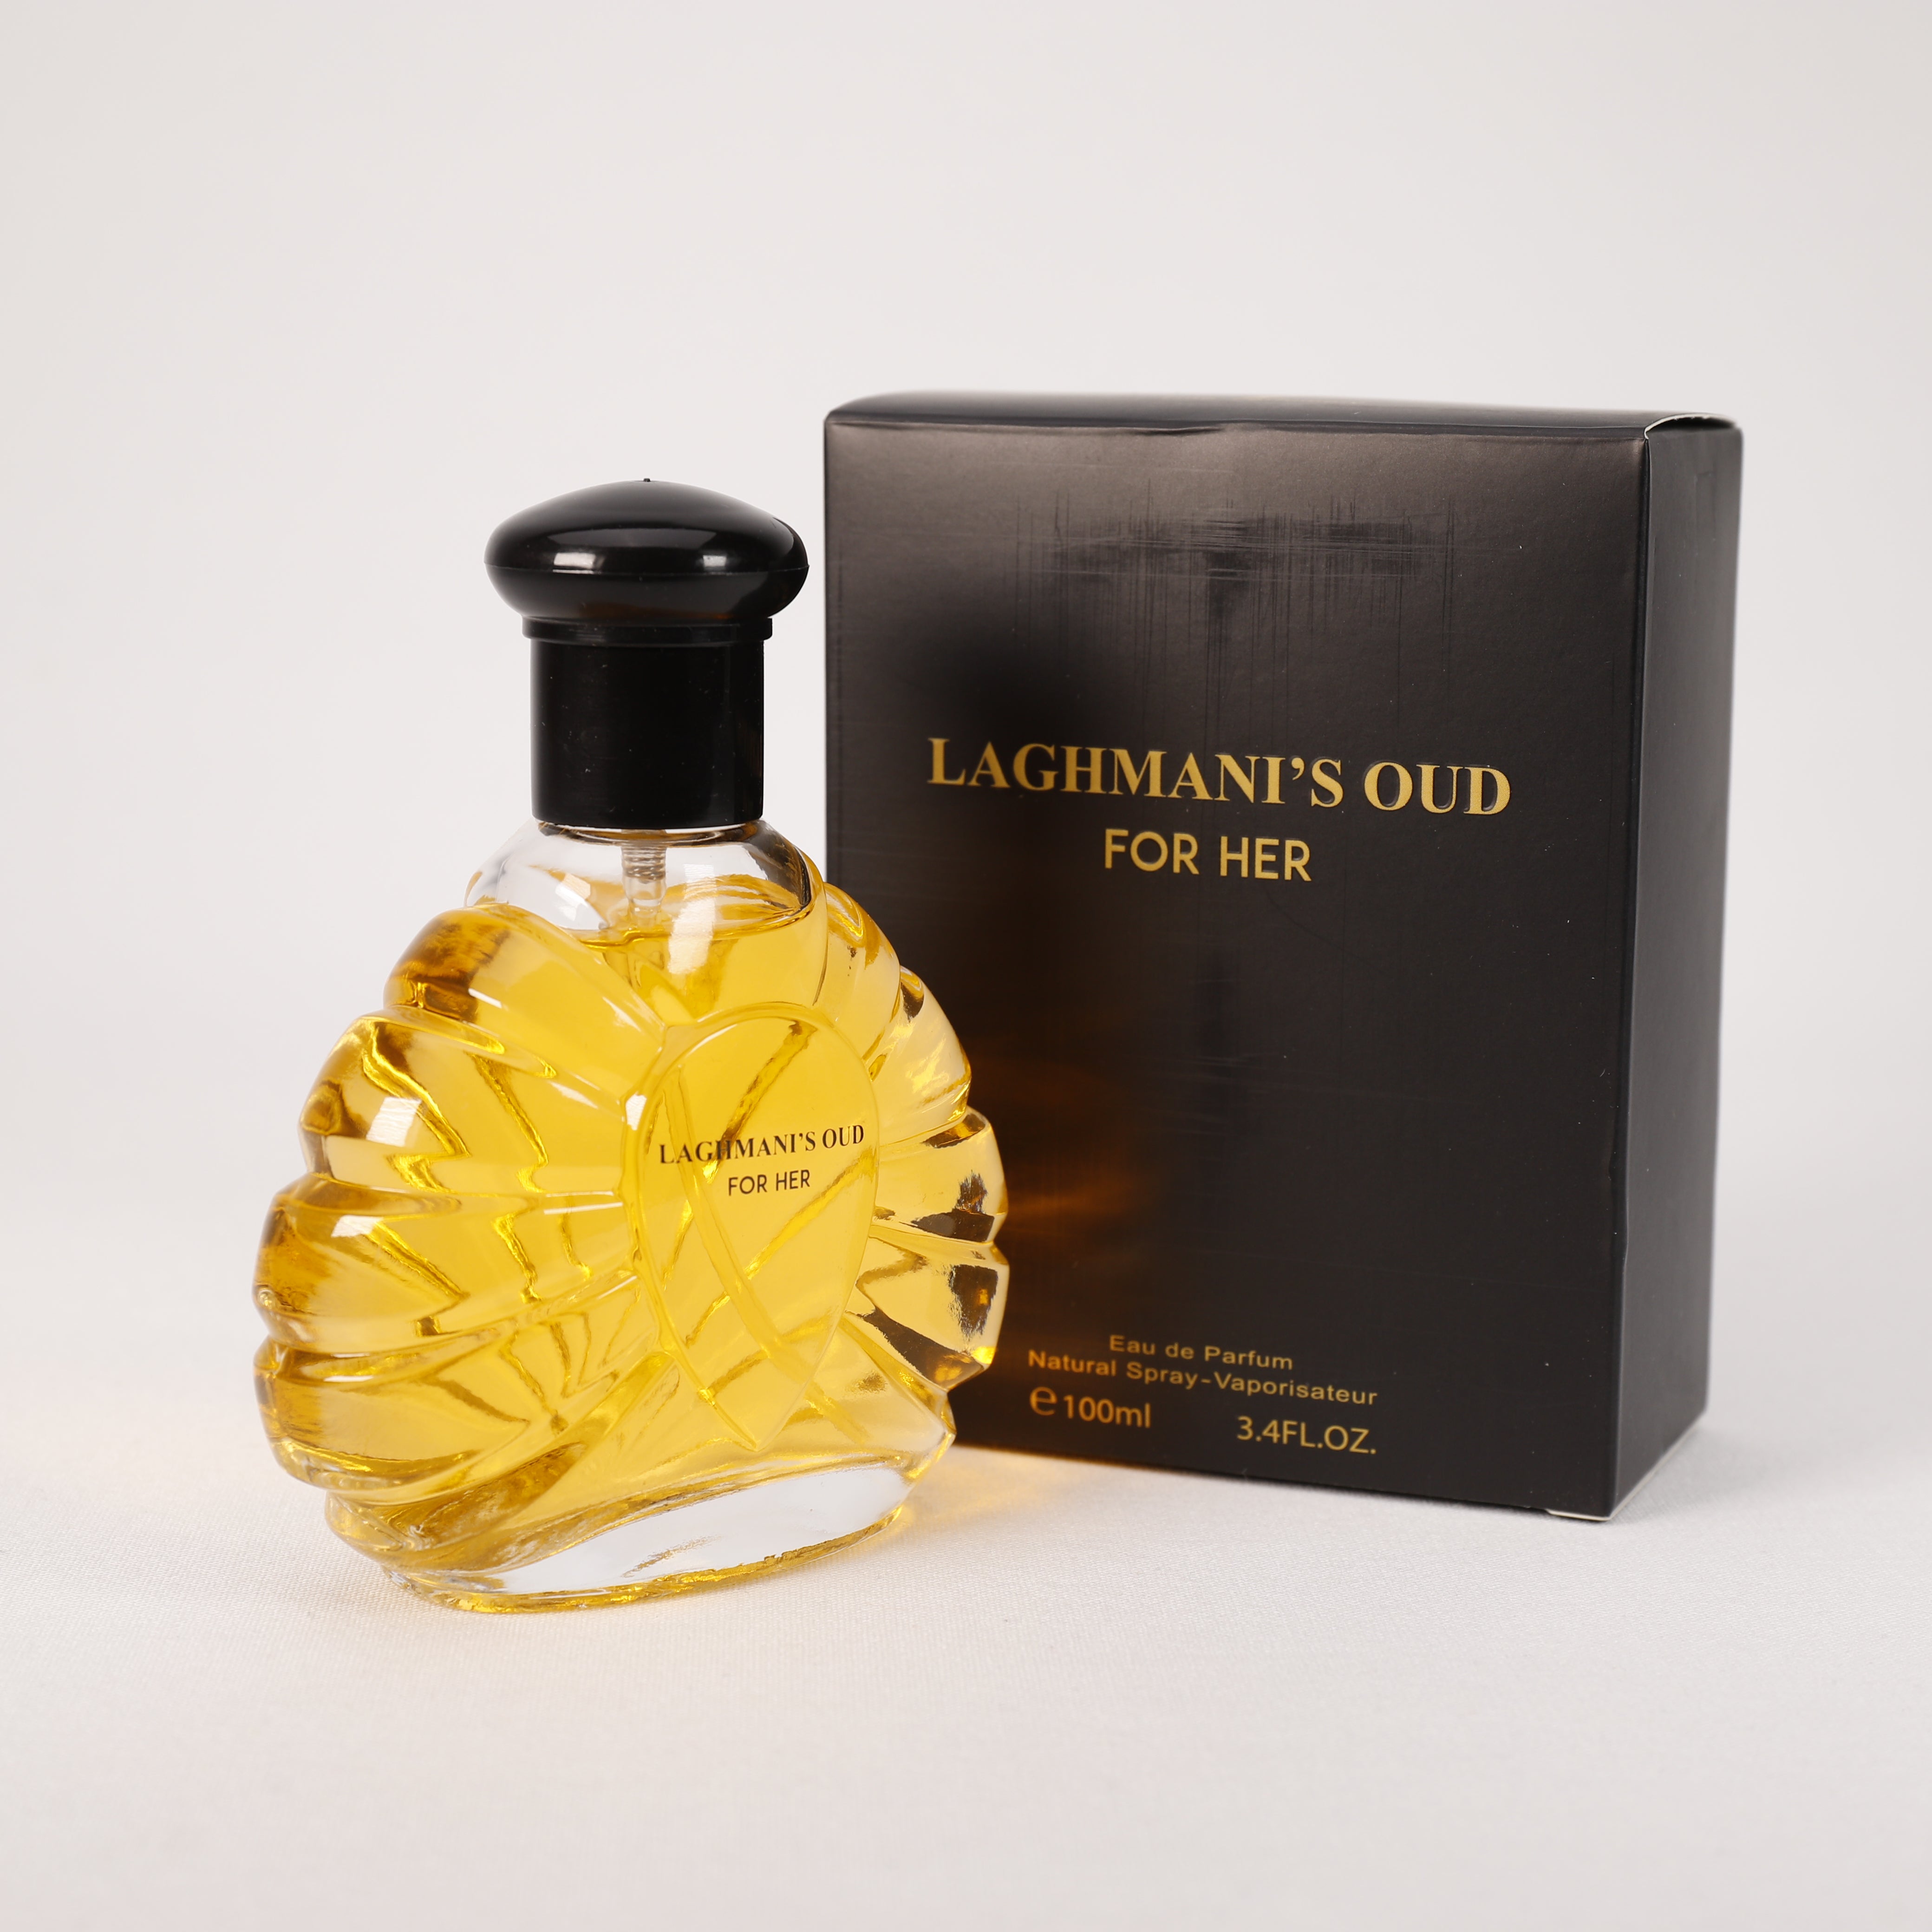 Laghmani'S Oud für Damen, Vaporizer mit natürlichem Spray, 100 ml, Duft, Parfüm, NEU OVP (Black)